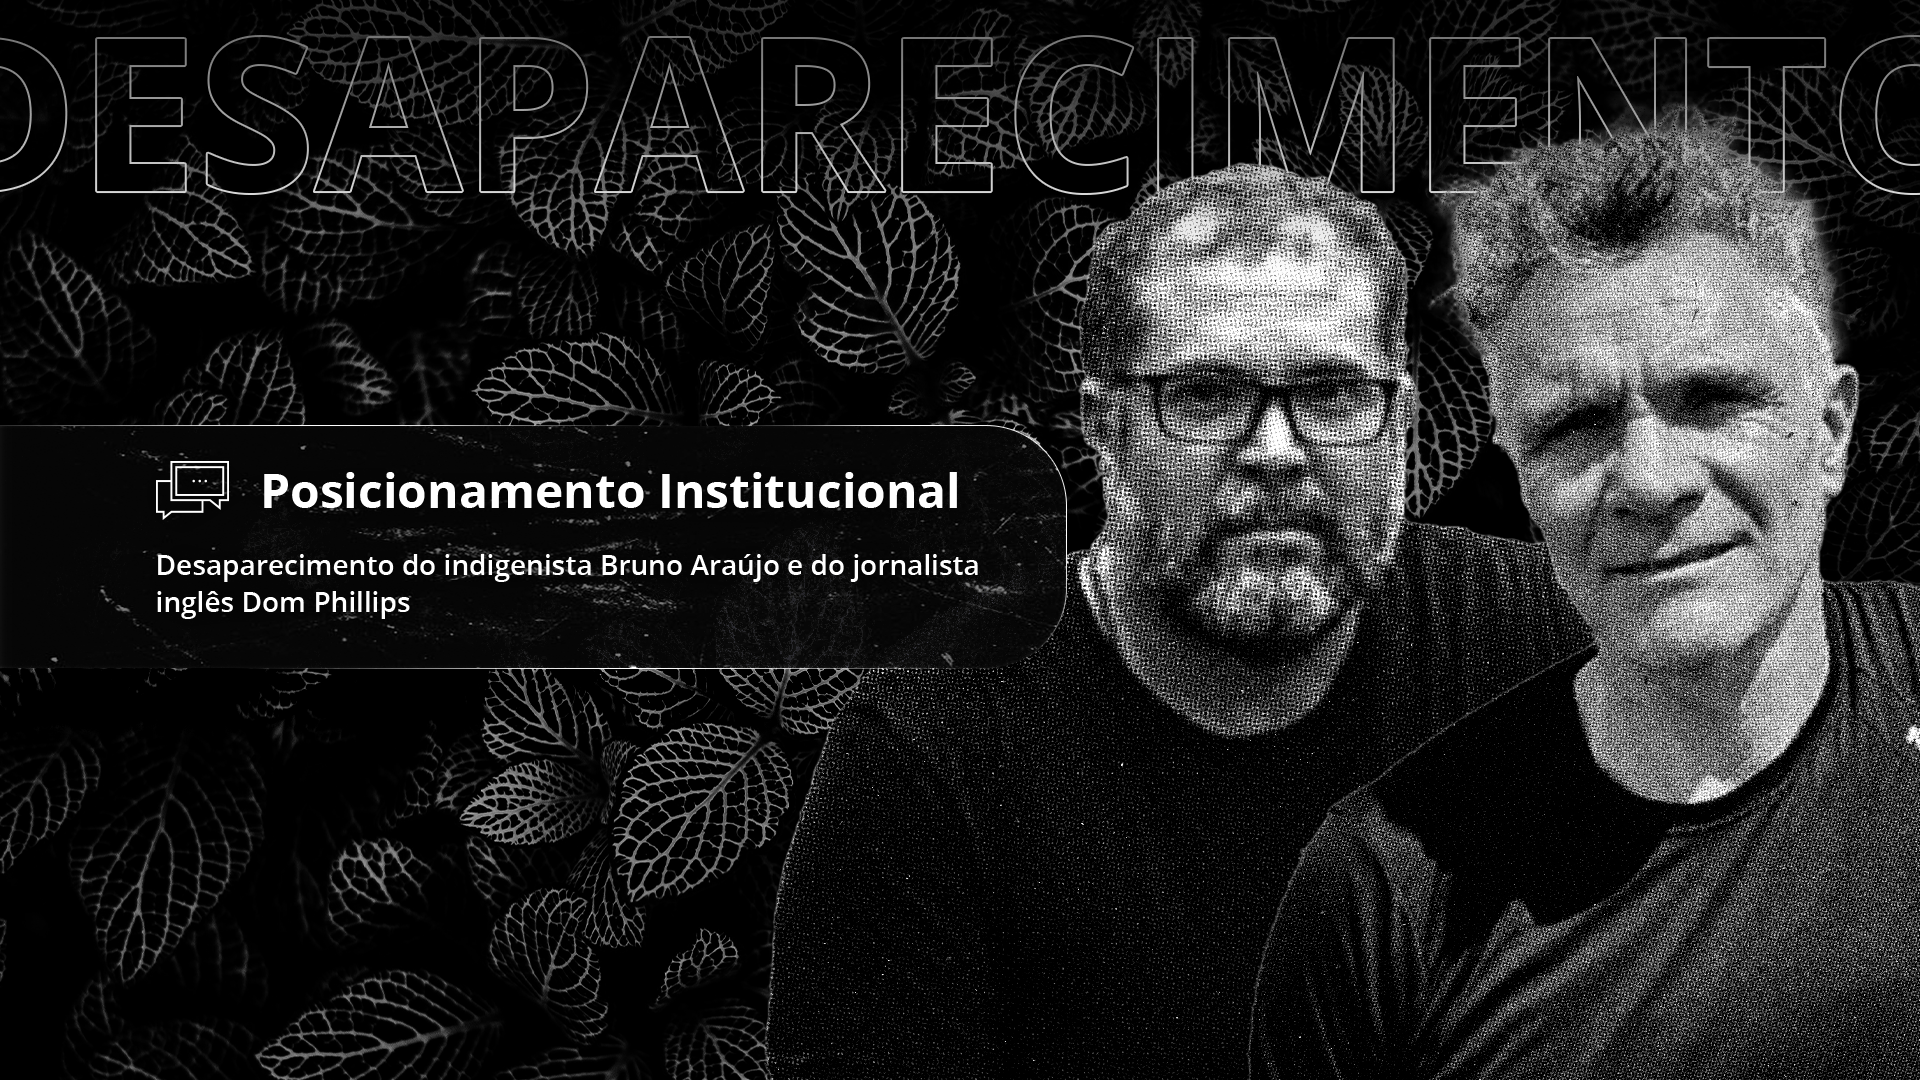 Posicionamento Institucional: Desaparecimento do indigenista Bruno Araújo e do jornalista inglês Dom Phillips